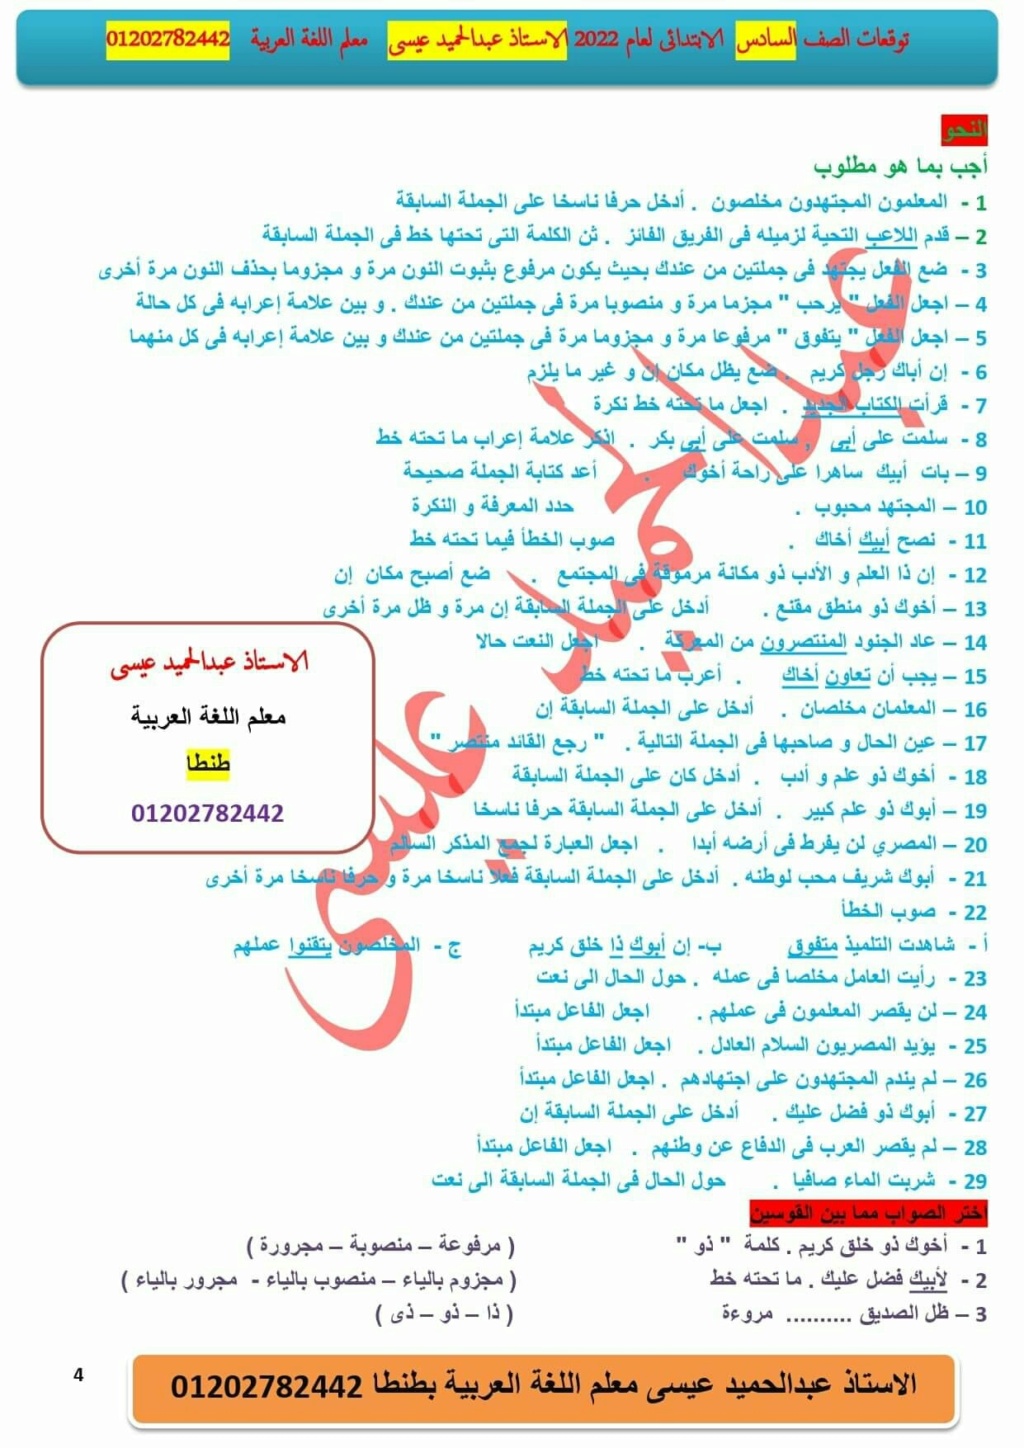 الأسئلة المتوقعة للصف السادس لغة عربية ترم ثاني 2022 الأستاذ / عبد الحميد عيسي 27945210